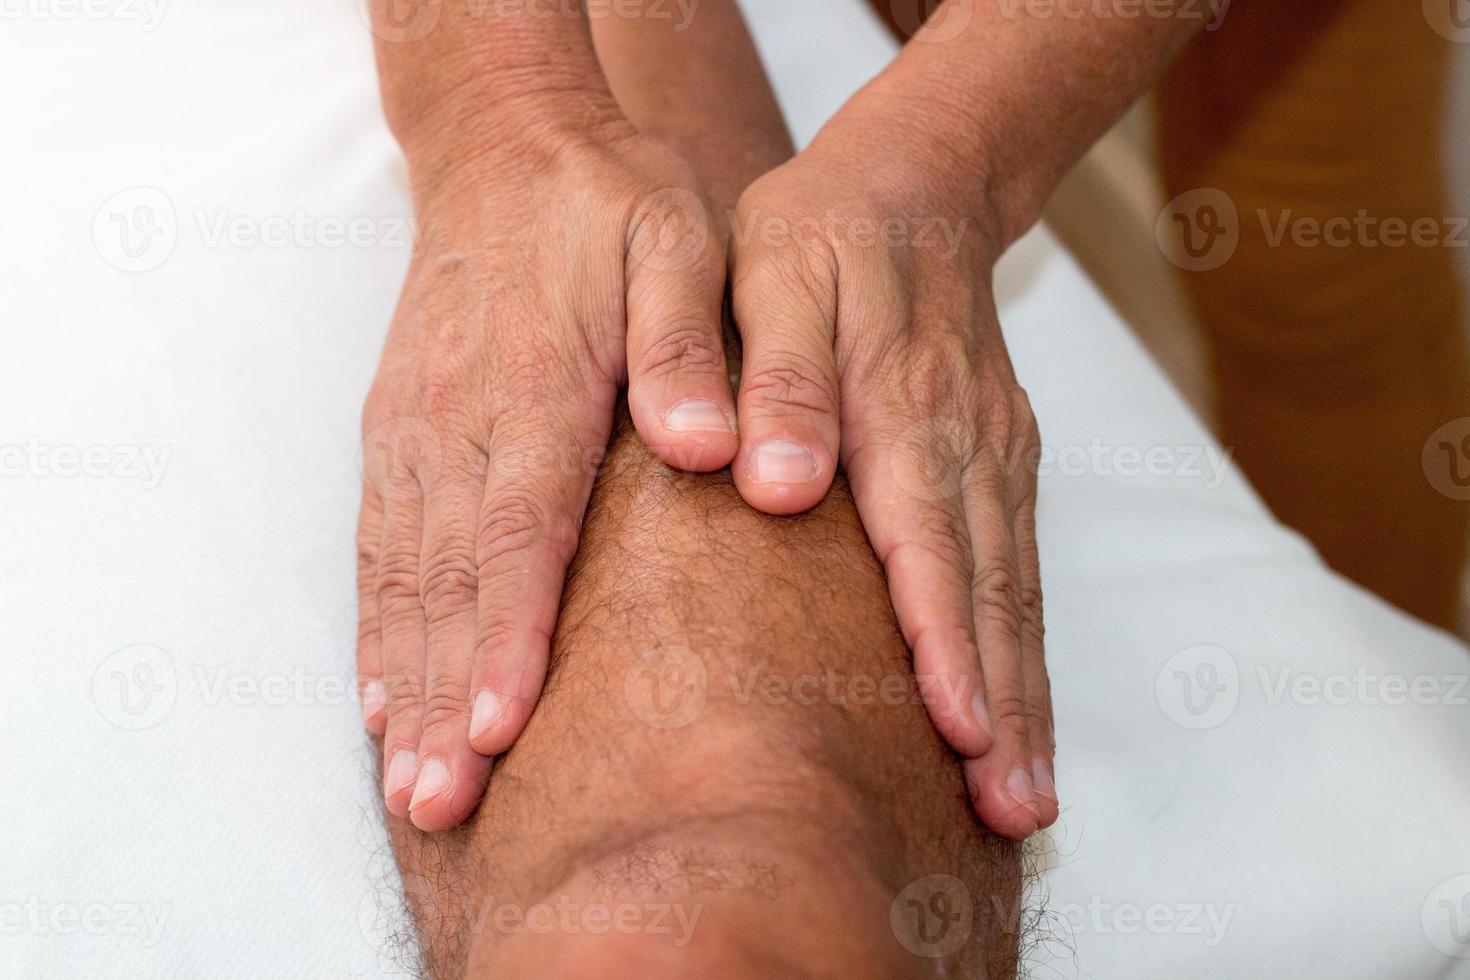 massoterapeuta massageando a perna de um homem abaixo do joelho foto